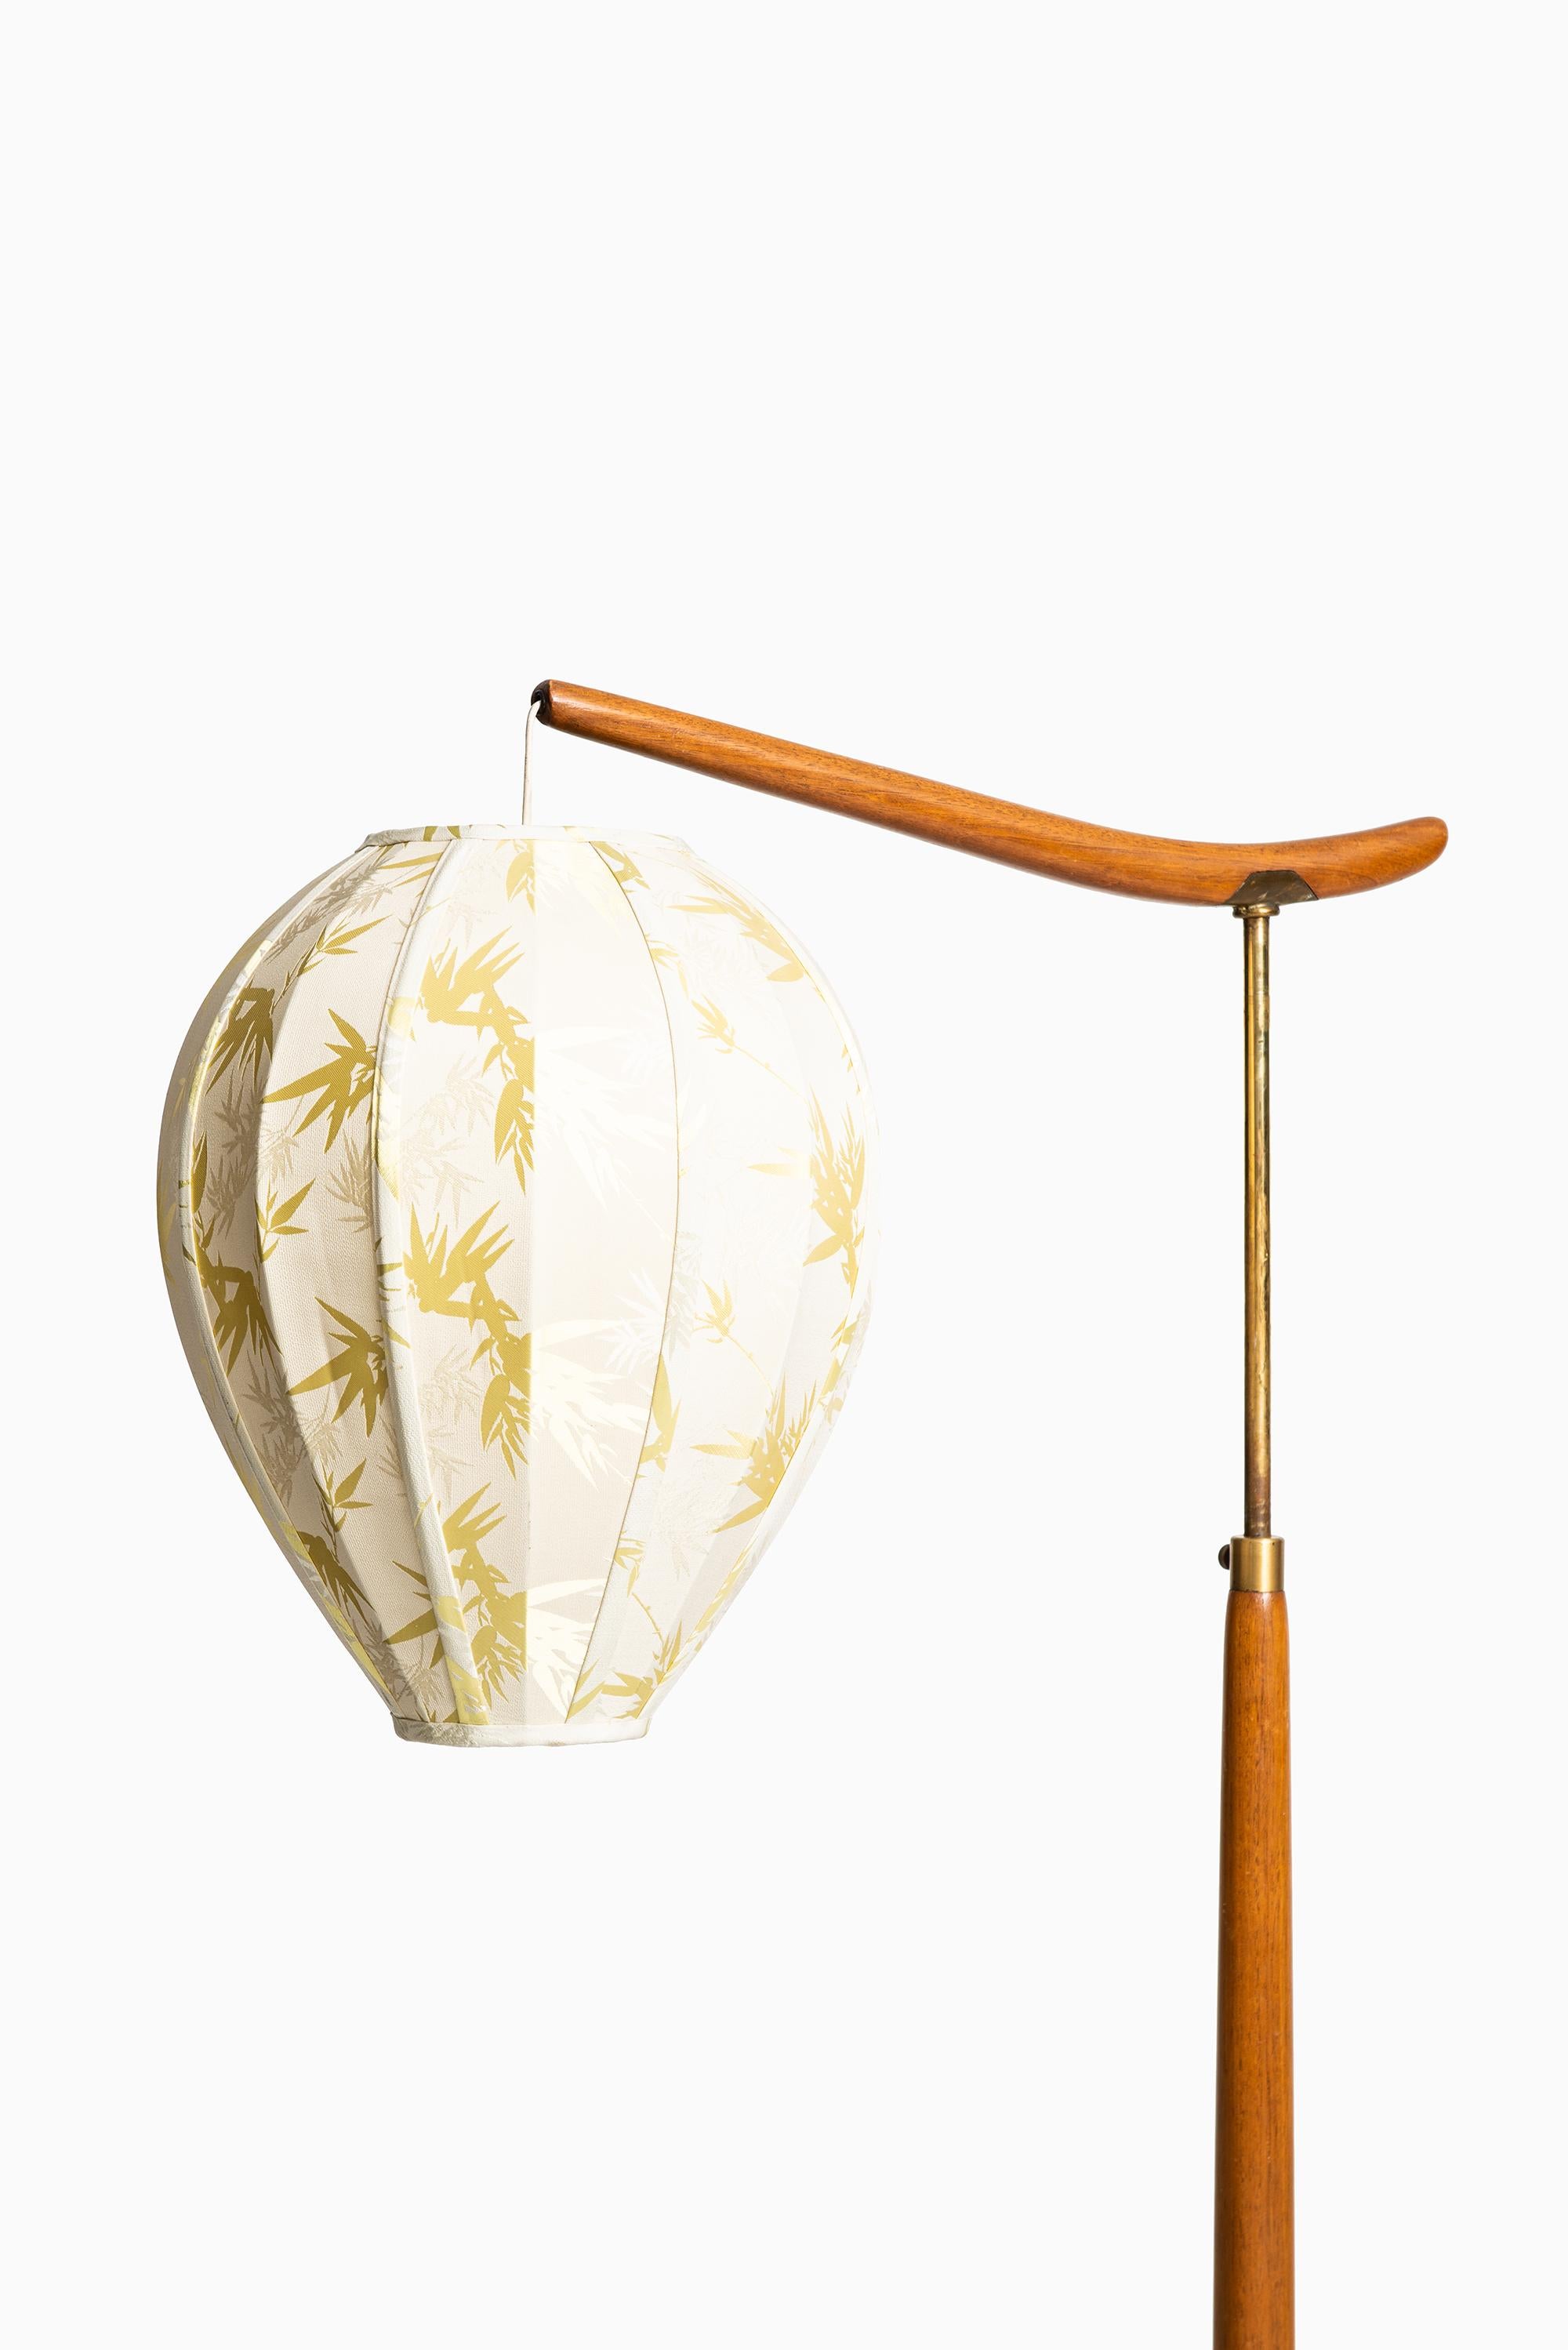 1940s Floor Lamp in Mahogany and Brass Produced in Sweden (Schwedisch)